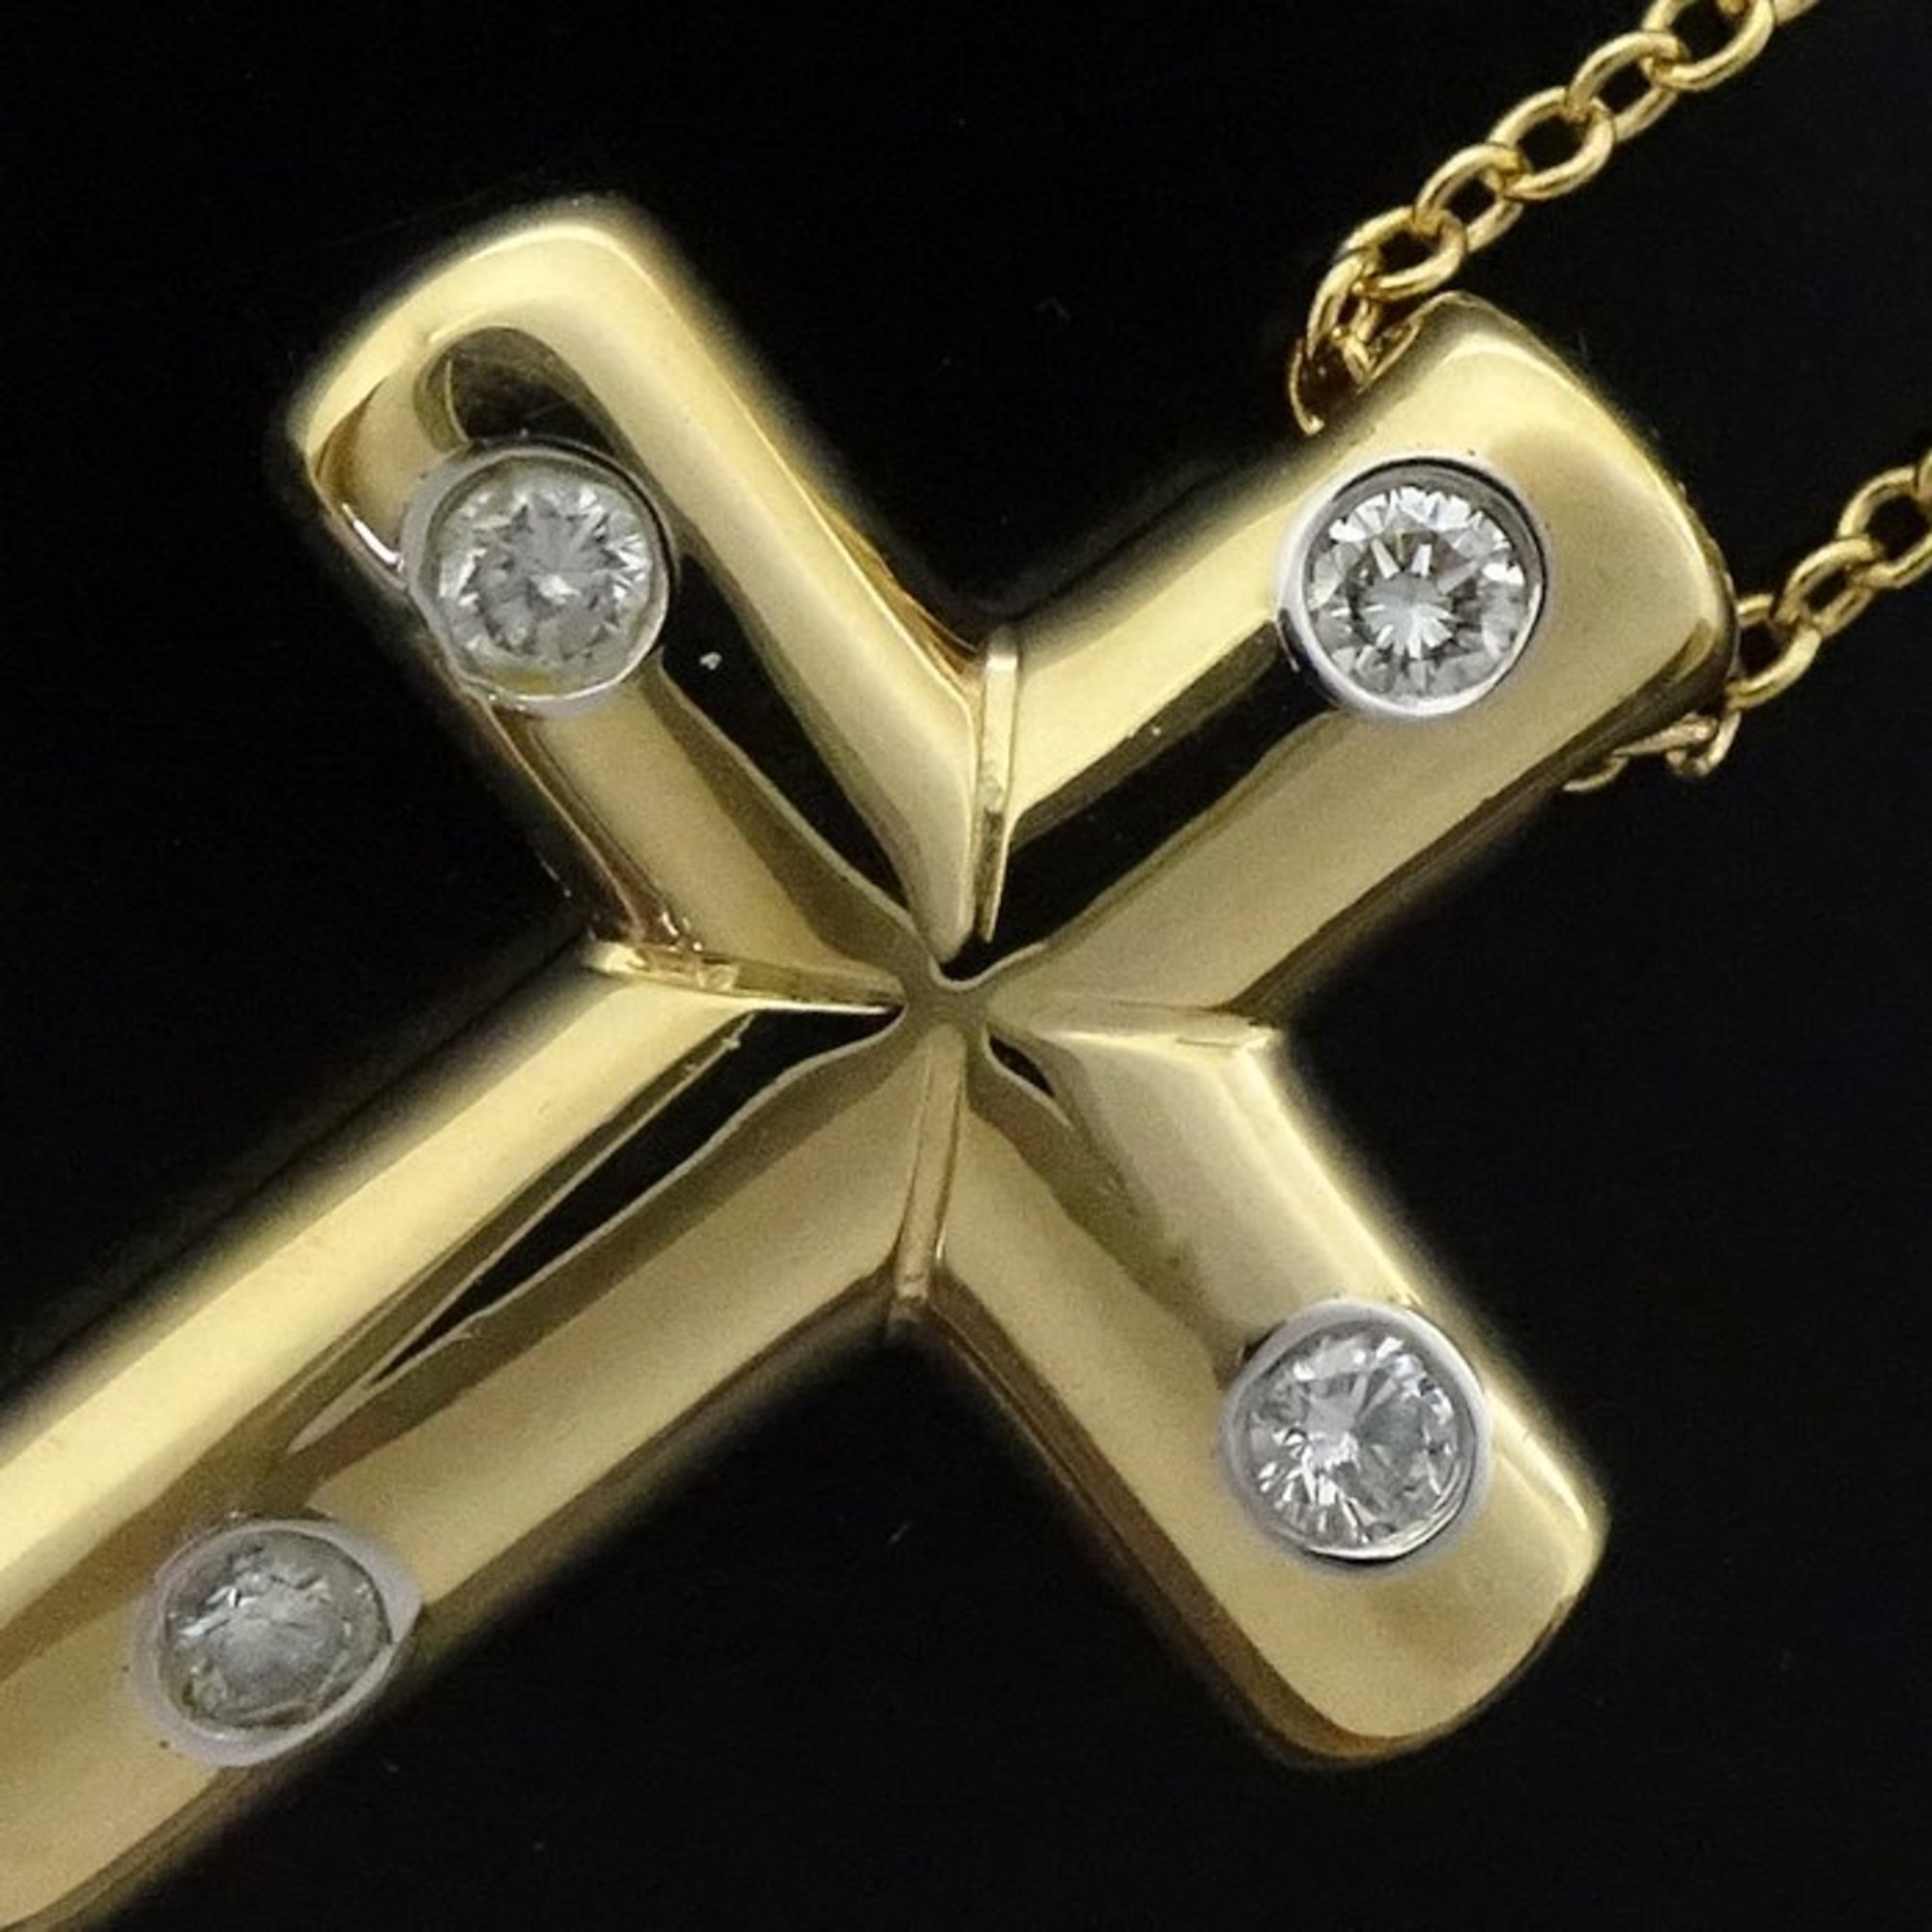 TIFFANY&Co. Tiffany Dots Cross Necklace 4P Diamond K18YG Yellow Gold 291813